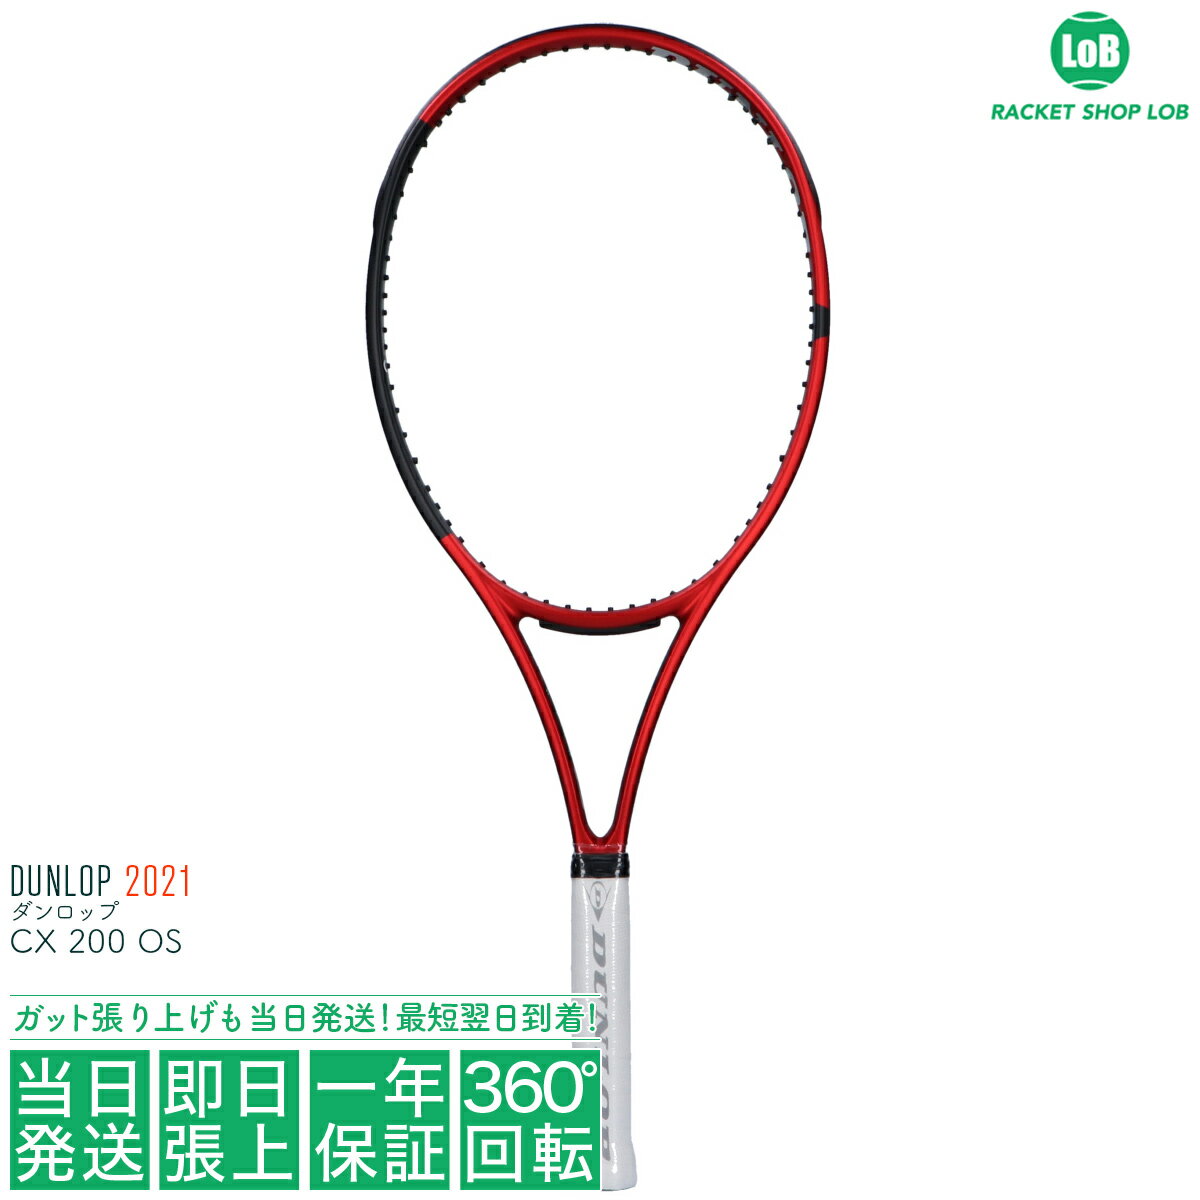 安いテニスラケット DUNLOPの通販商品を比較 | ショッピング情報のオークファン